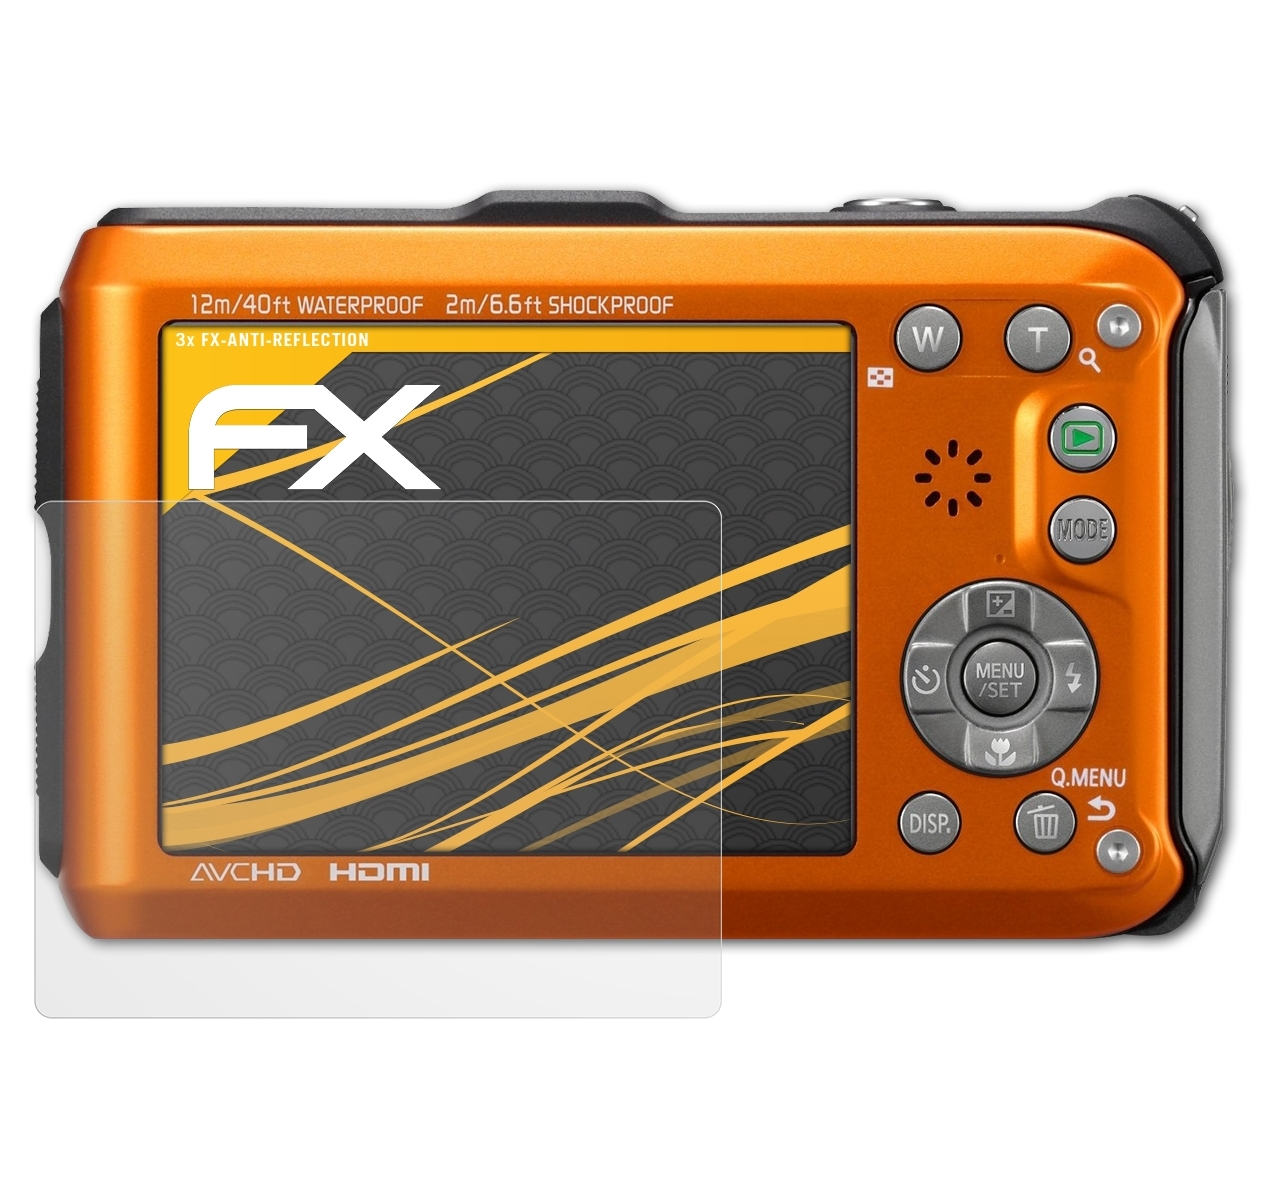 Panasonic FX-Antireflex DMC-FT3) 3x ATFOLIX Displayschutz(für Lumix